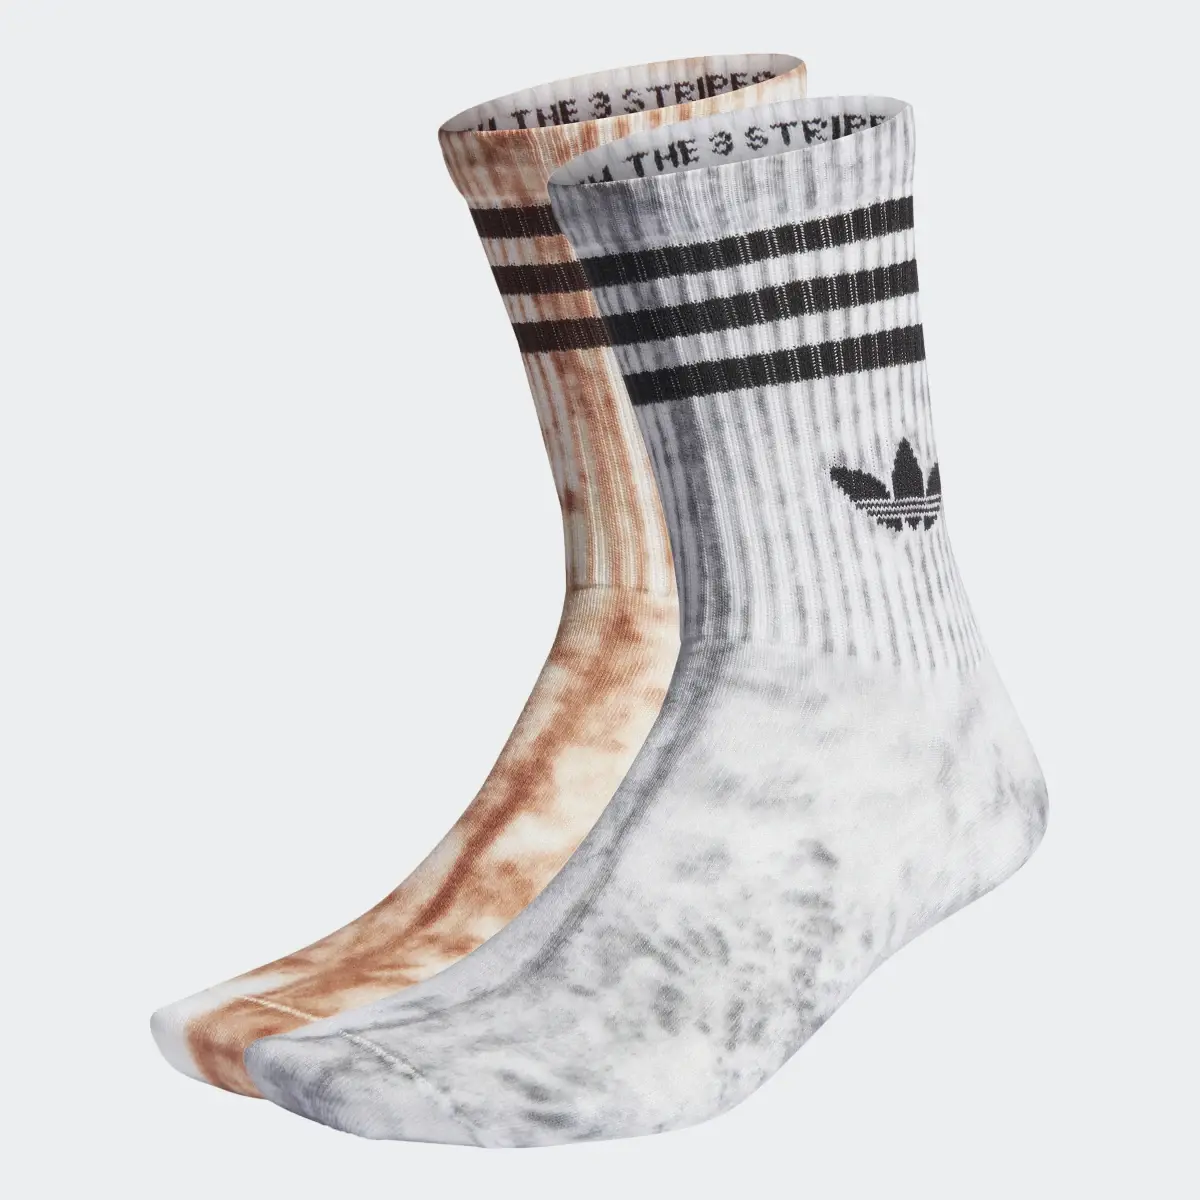 Adidas Tie Dye Socken, 2 Paar. 1